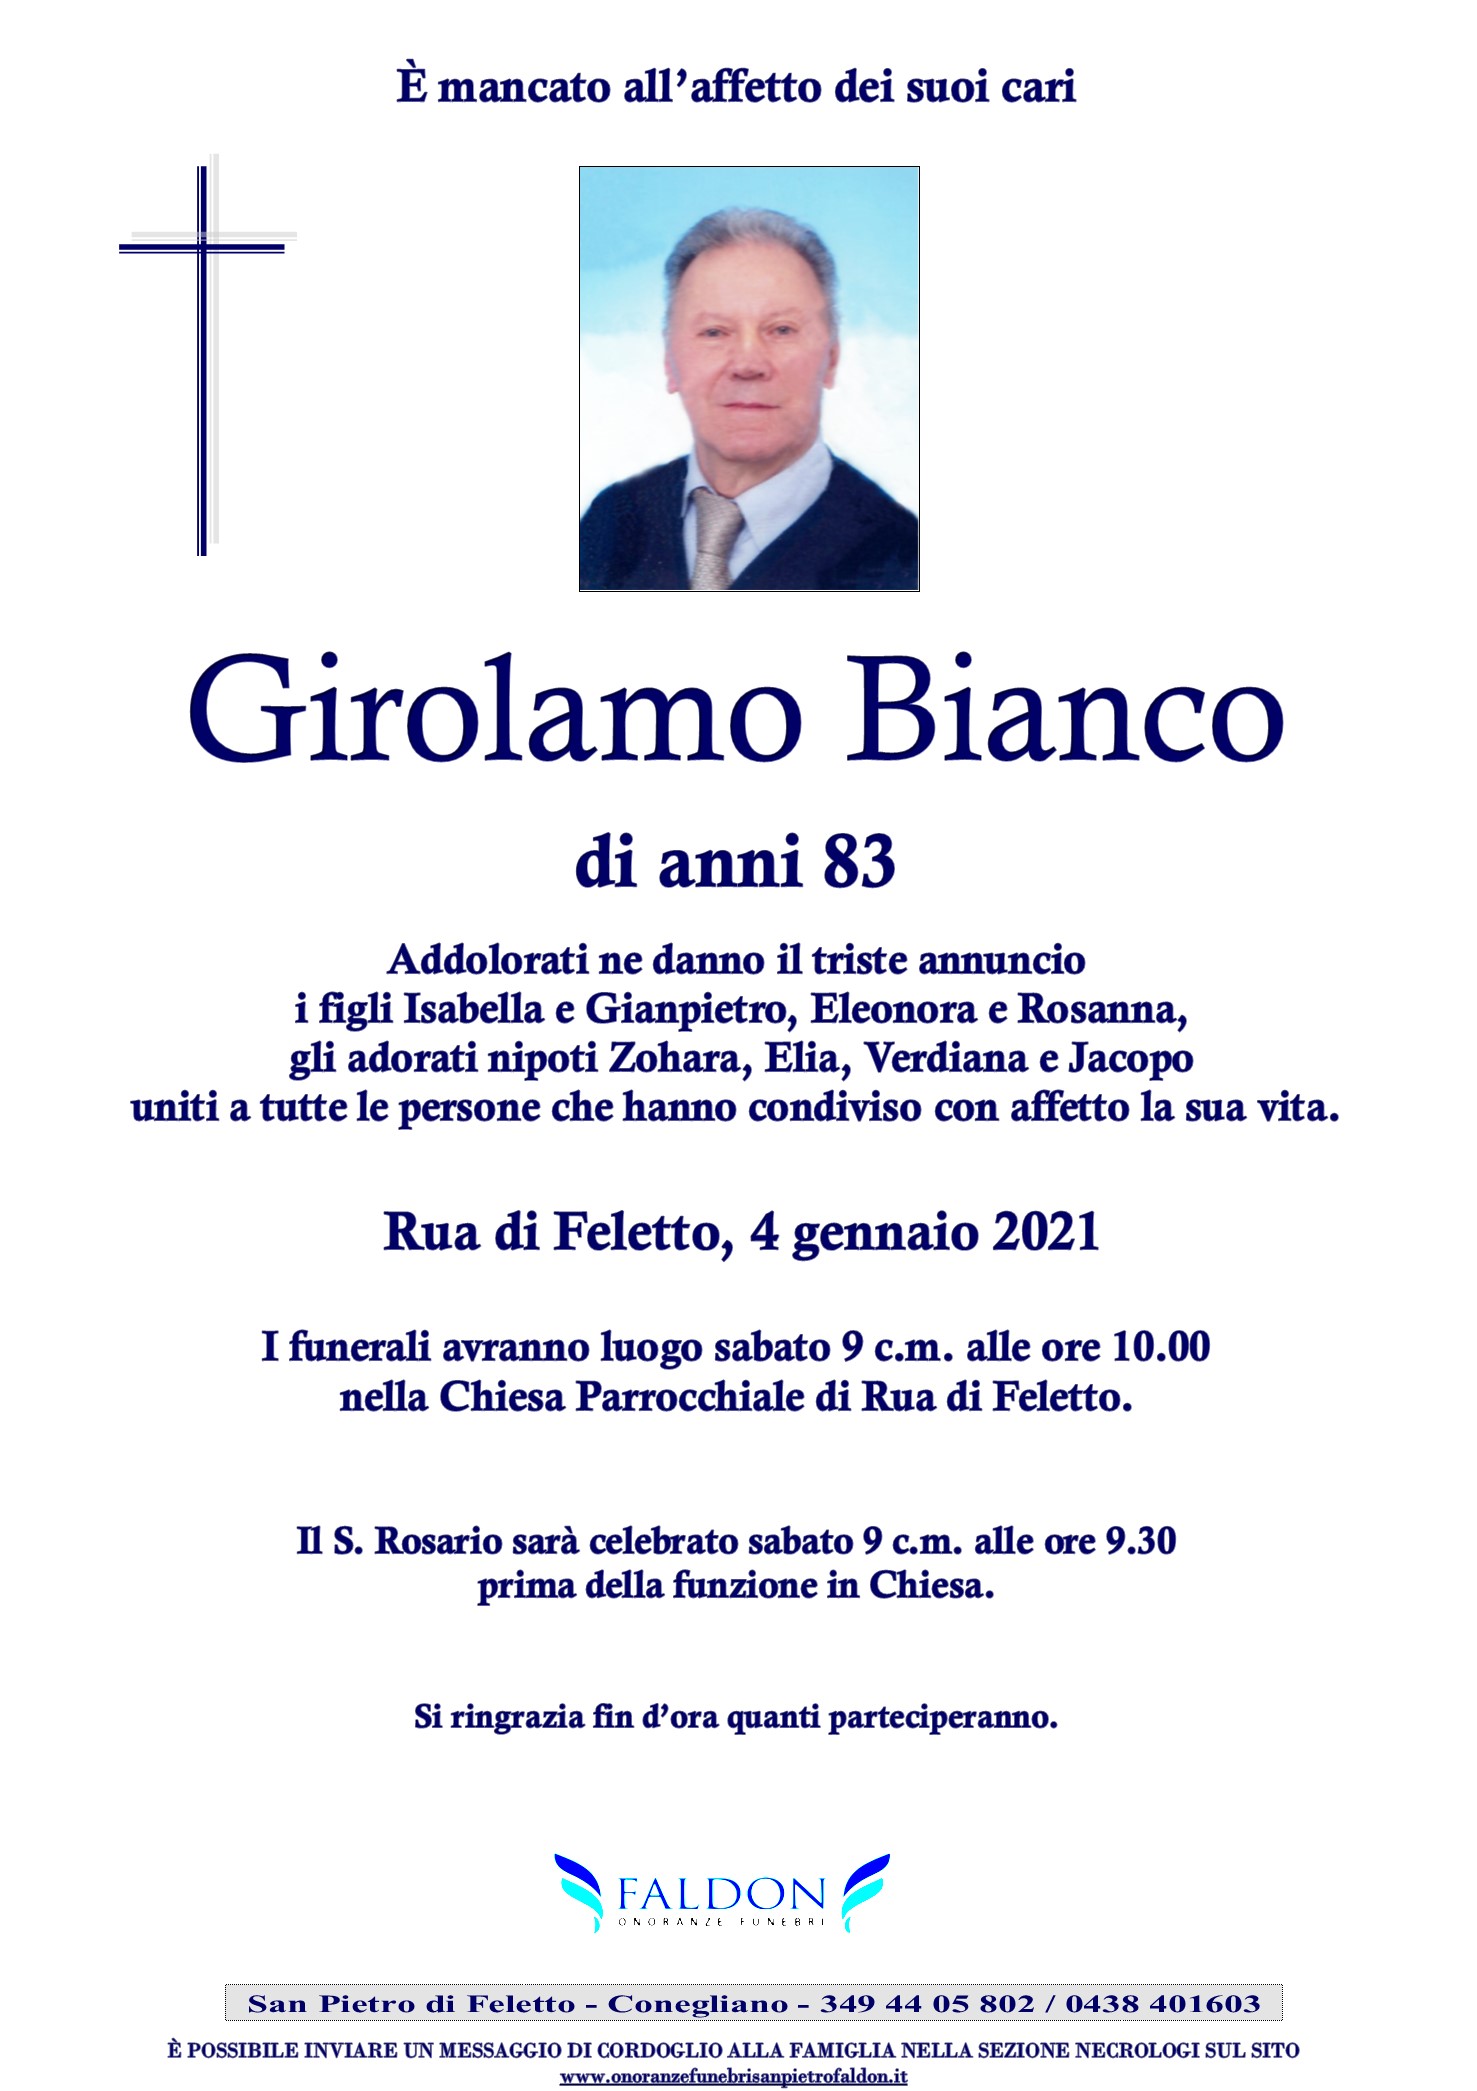 Girolamo Bianco